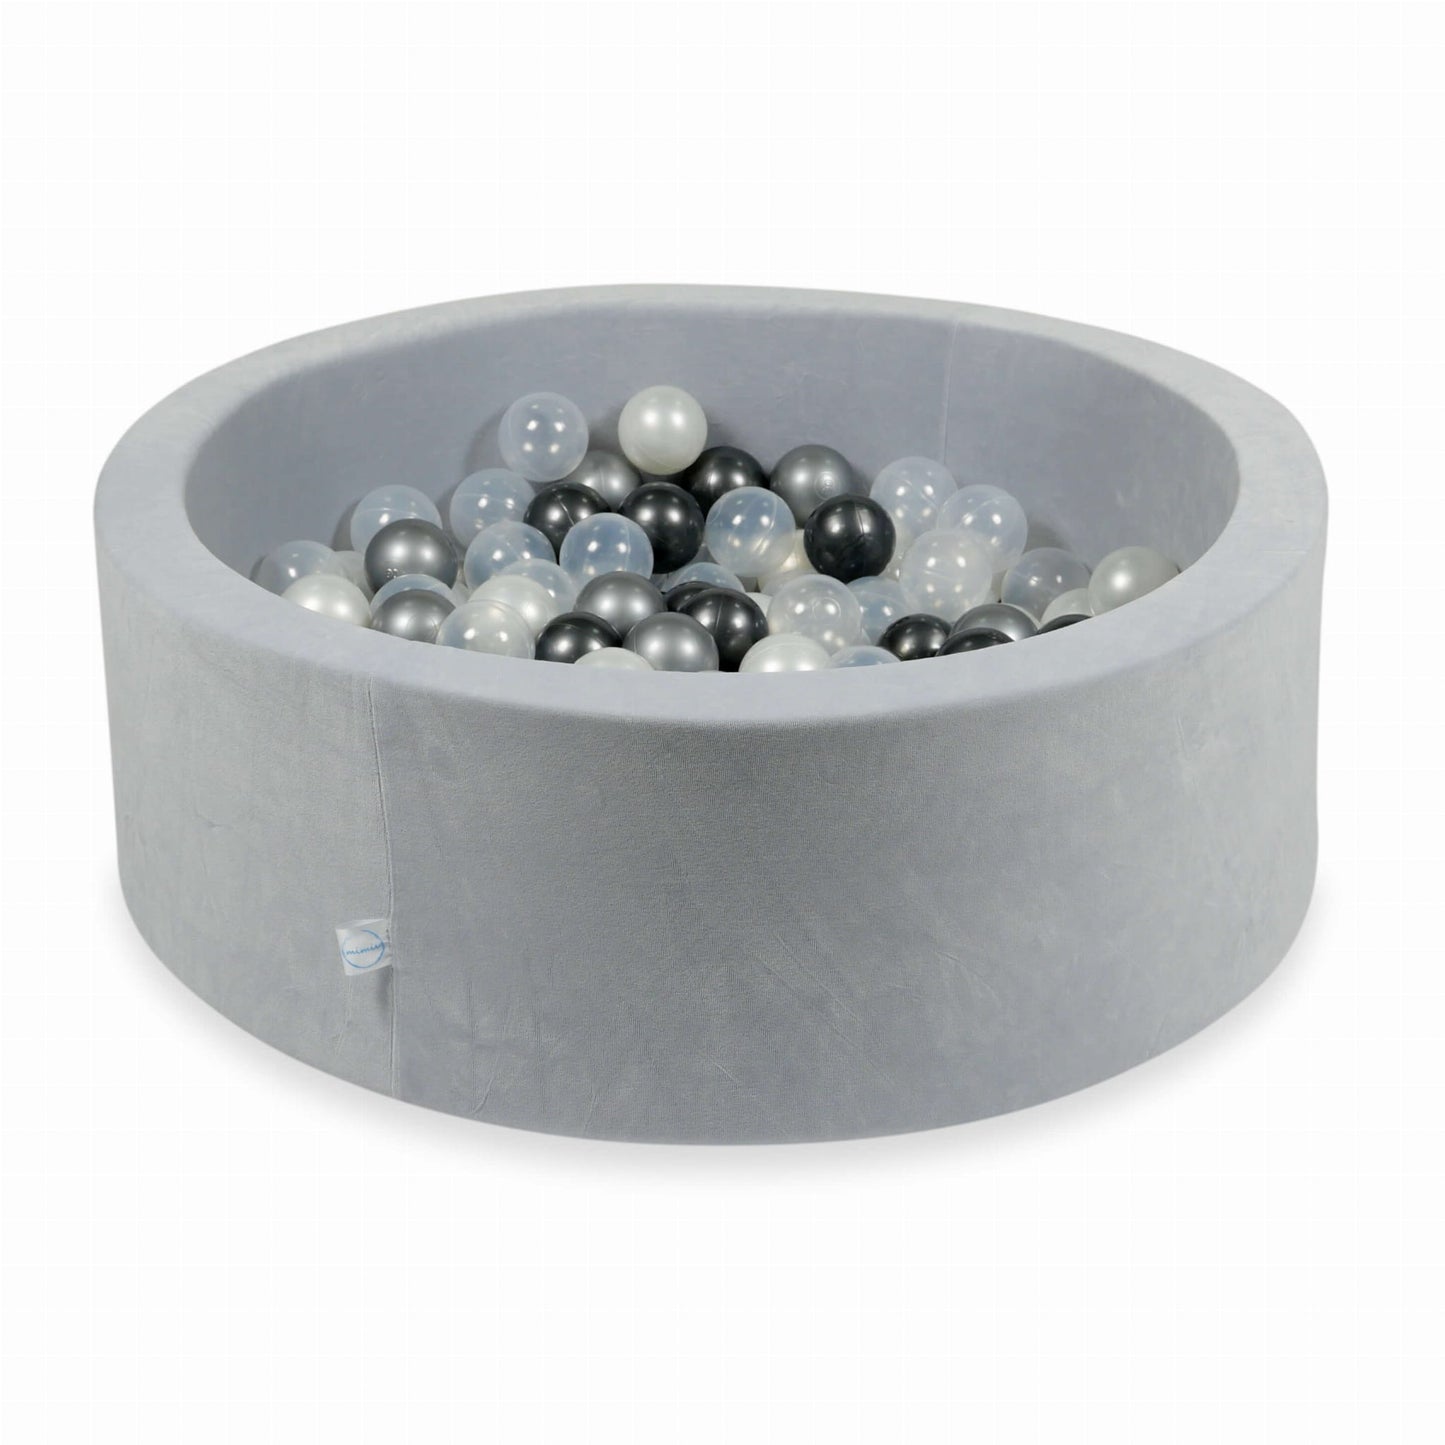 Piscine à Balles 90x30 Velvet Soft gris clair avec balles 200 pcs  (perle, transparent, graphite métallique, argent)